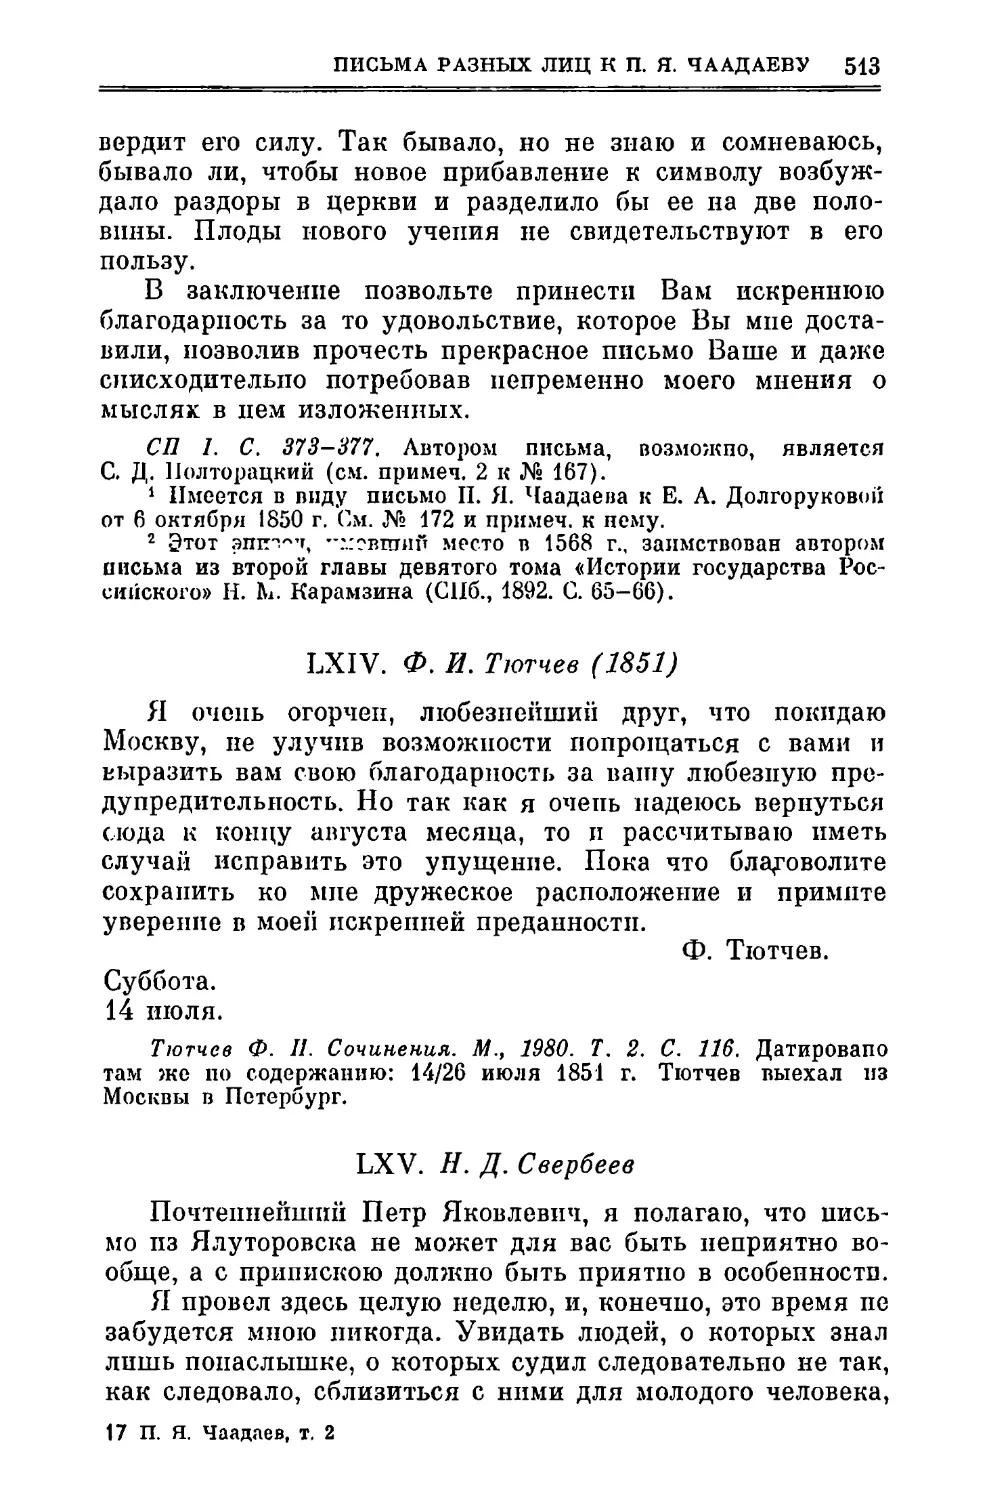 LXIV. Тютчев Ф.И. 14.VII.1851
LXV. Свербеев Н.Д. 4.VIII.1851